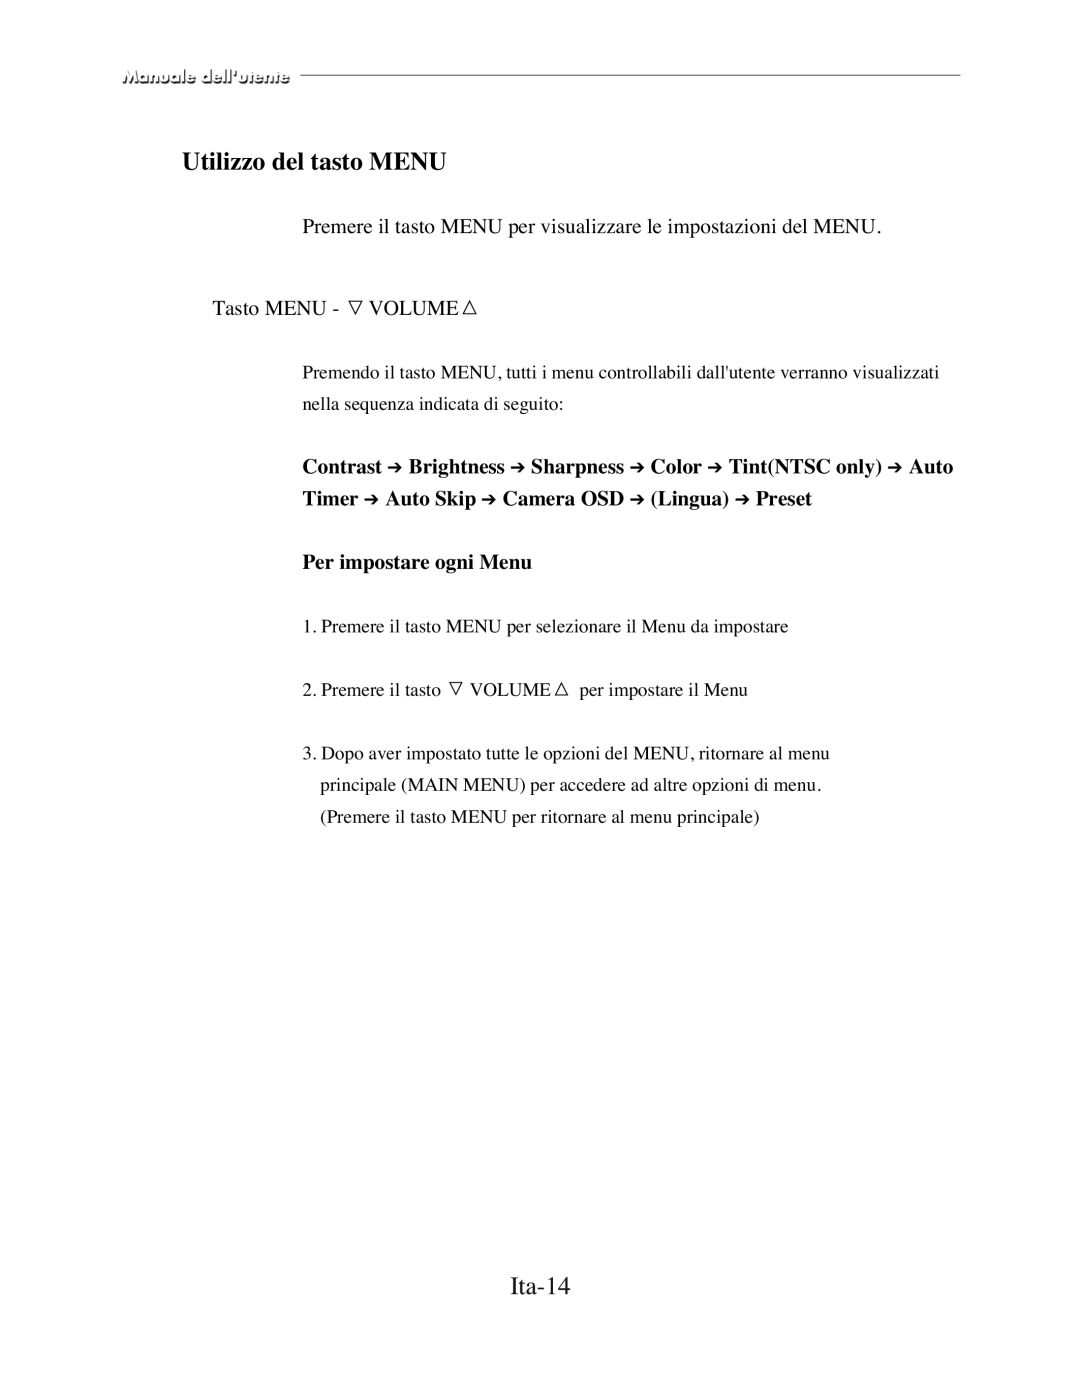 Samsung SMC-152FP manual Utilizzo del tasto MENU, Ita-14, Per impostare ogni Menu 